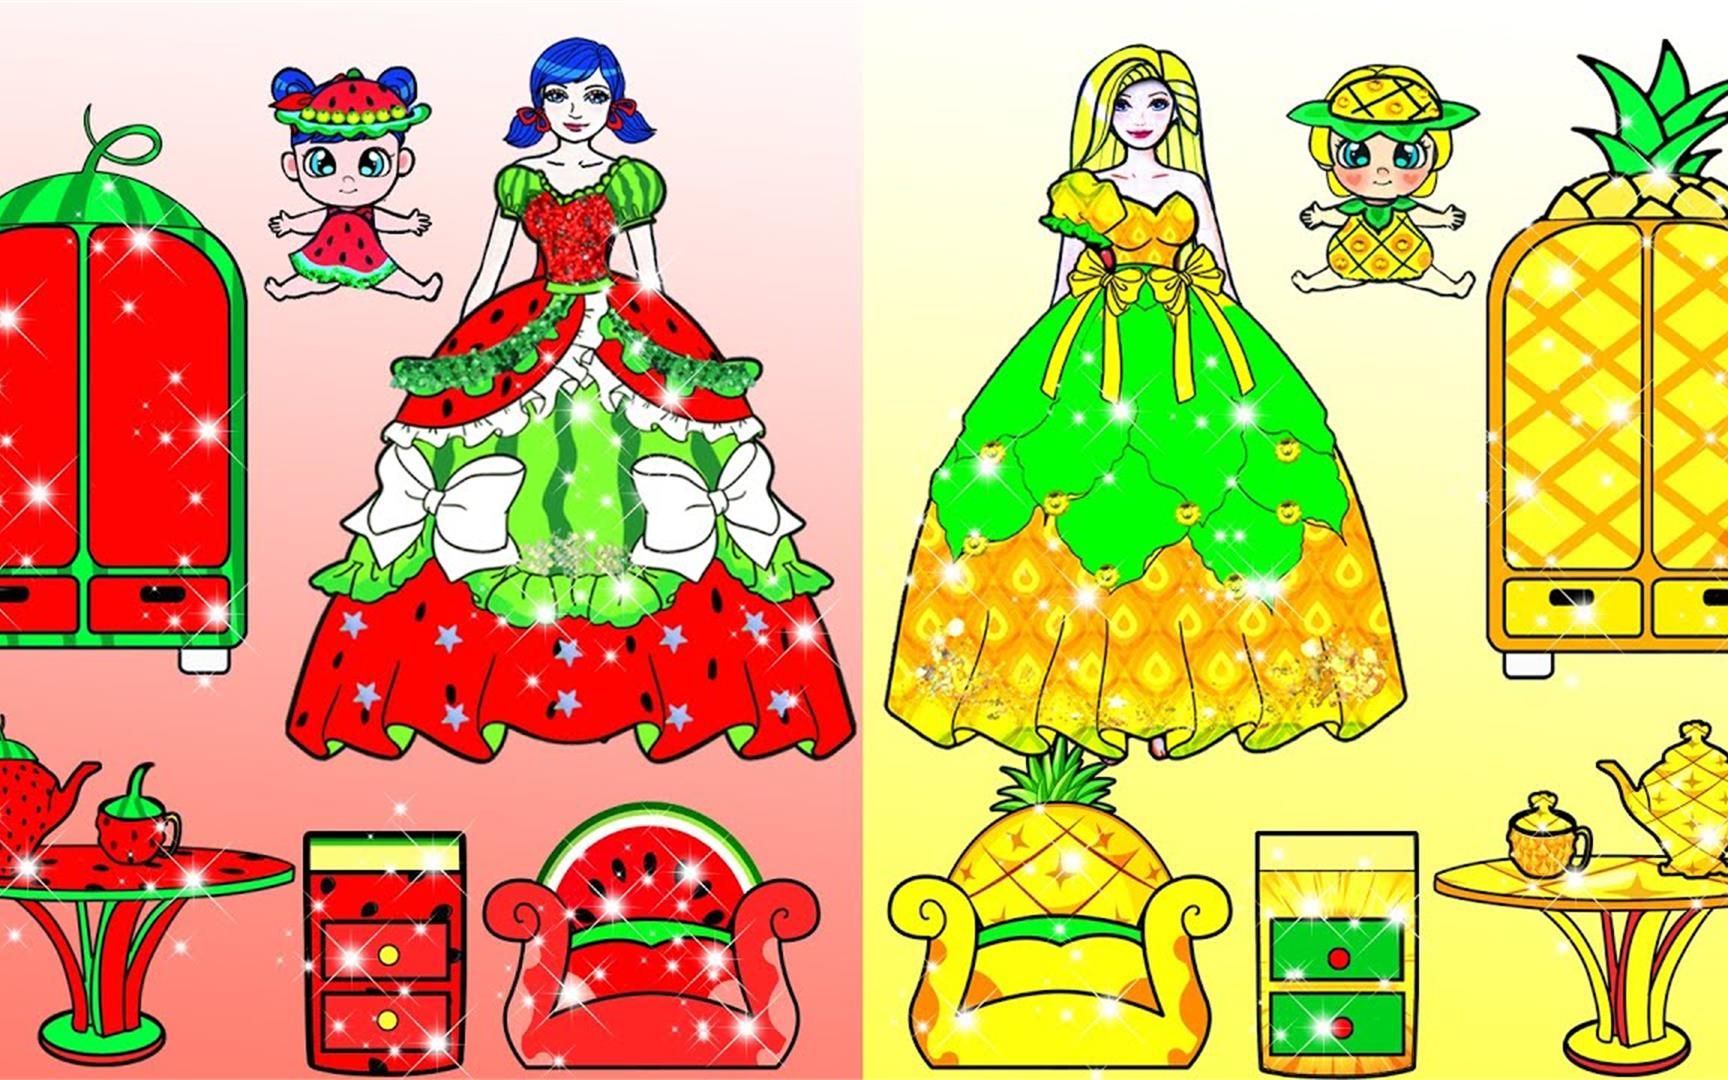 纸娃娃动画:瓢虫雷迪vs长发公主屋装饰挑战,西瓜vs菠萝娃娃屋,哪个更